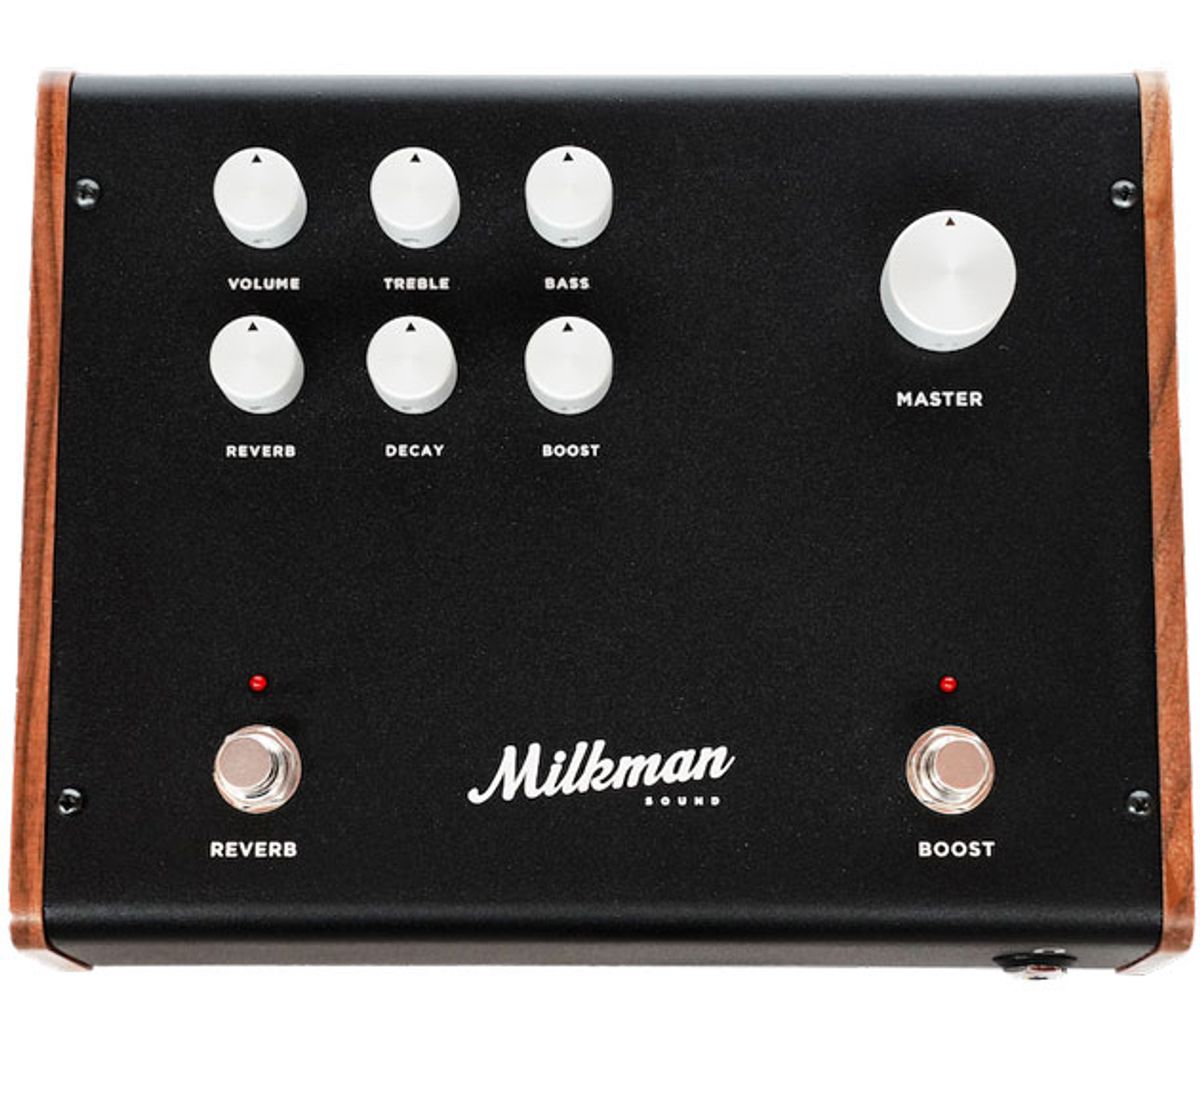 Milkman Sound Announces the Amp 100